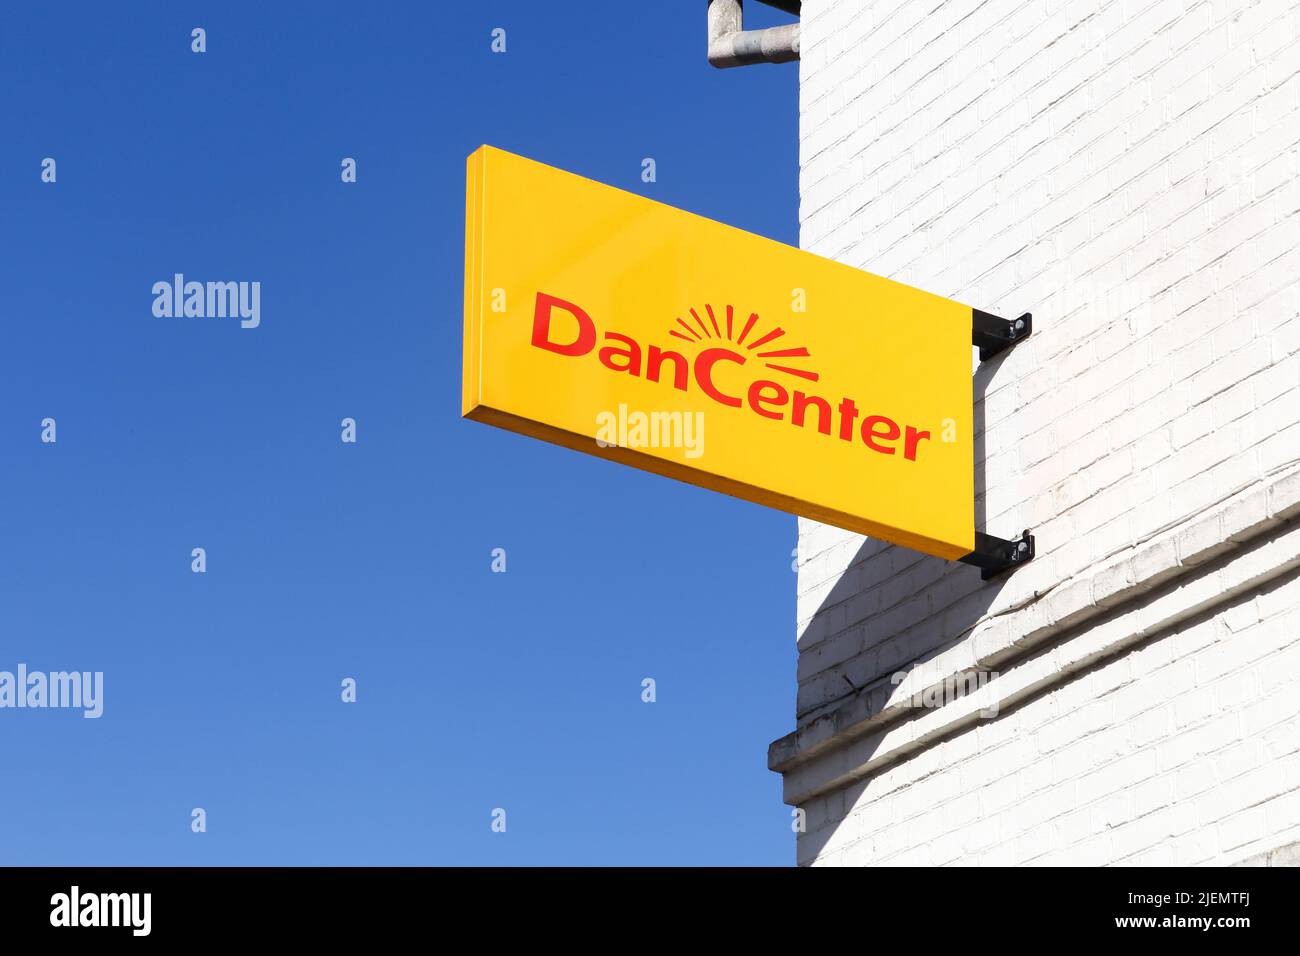 Juelsminde, Dinamarca - 9 de septiembre de 2016: Logotipo de DanCenter en la pared. DanCenter es un mercado de alquiler vacacional Foto de stock